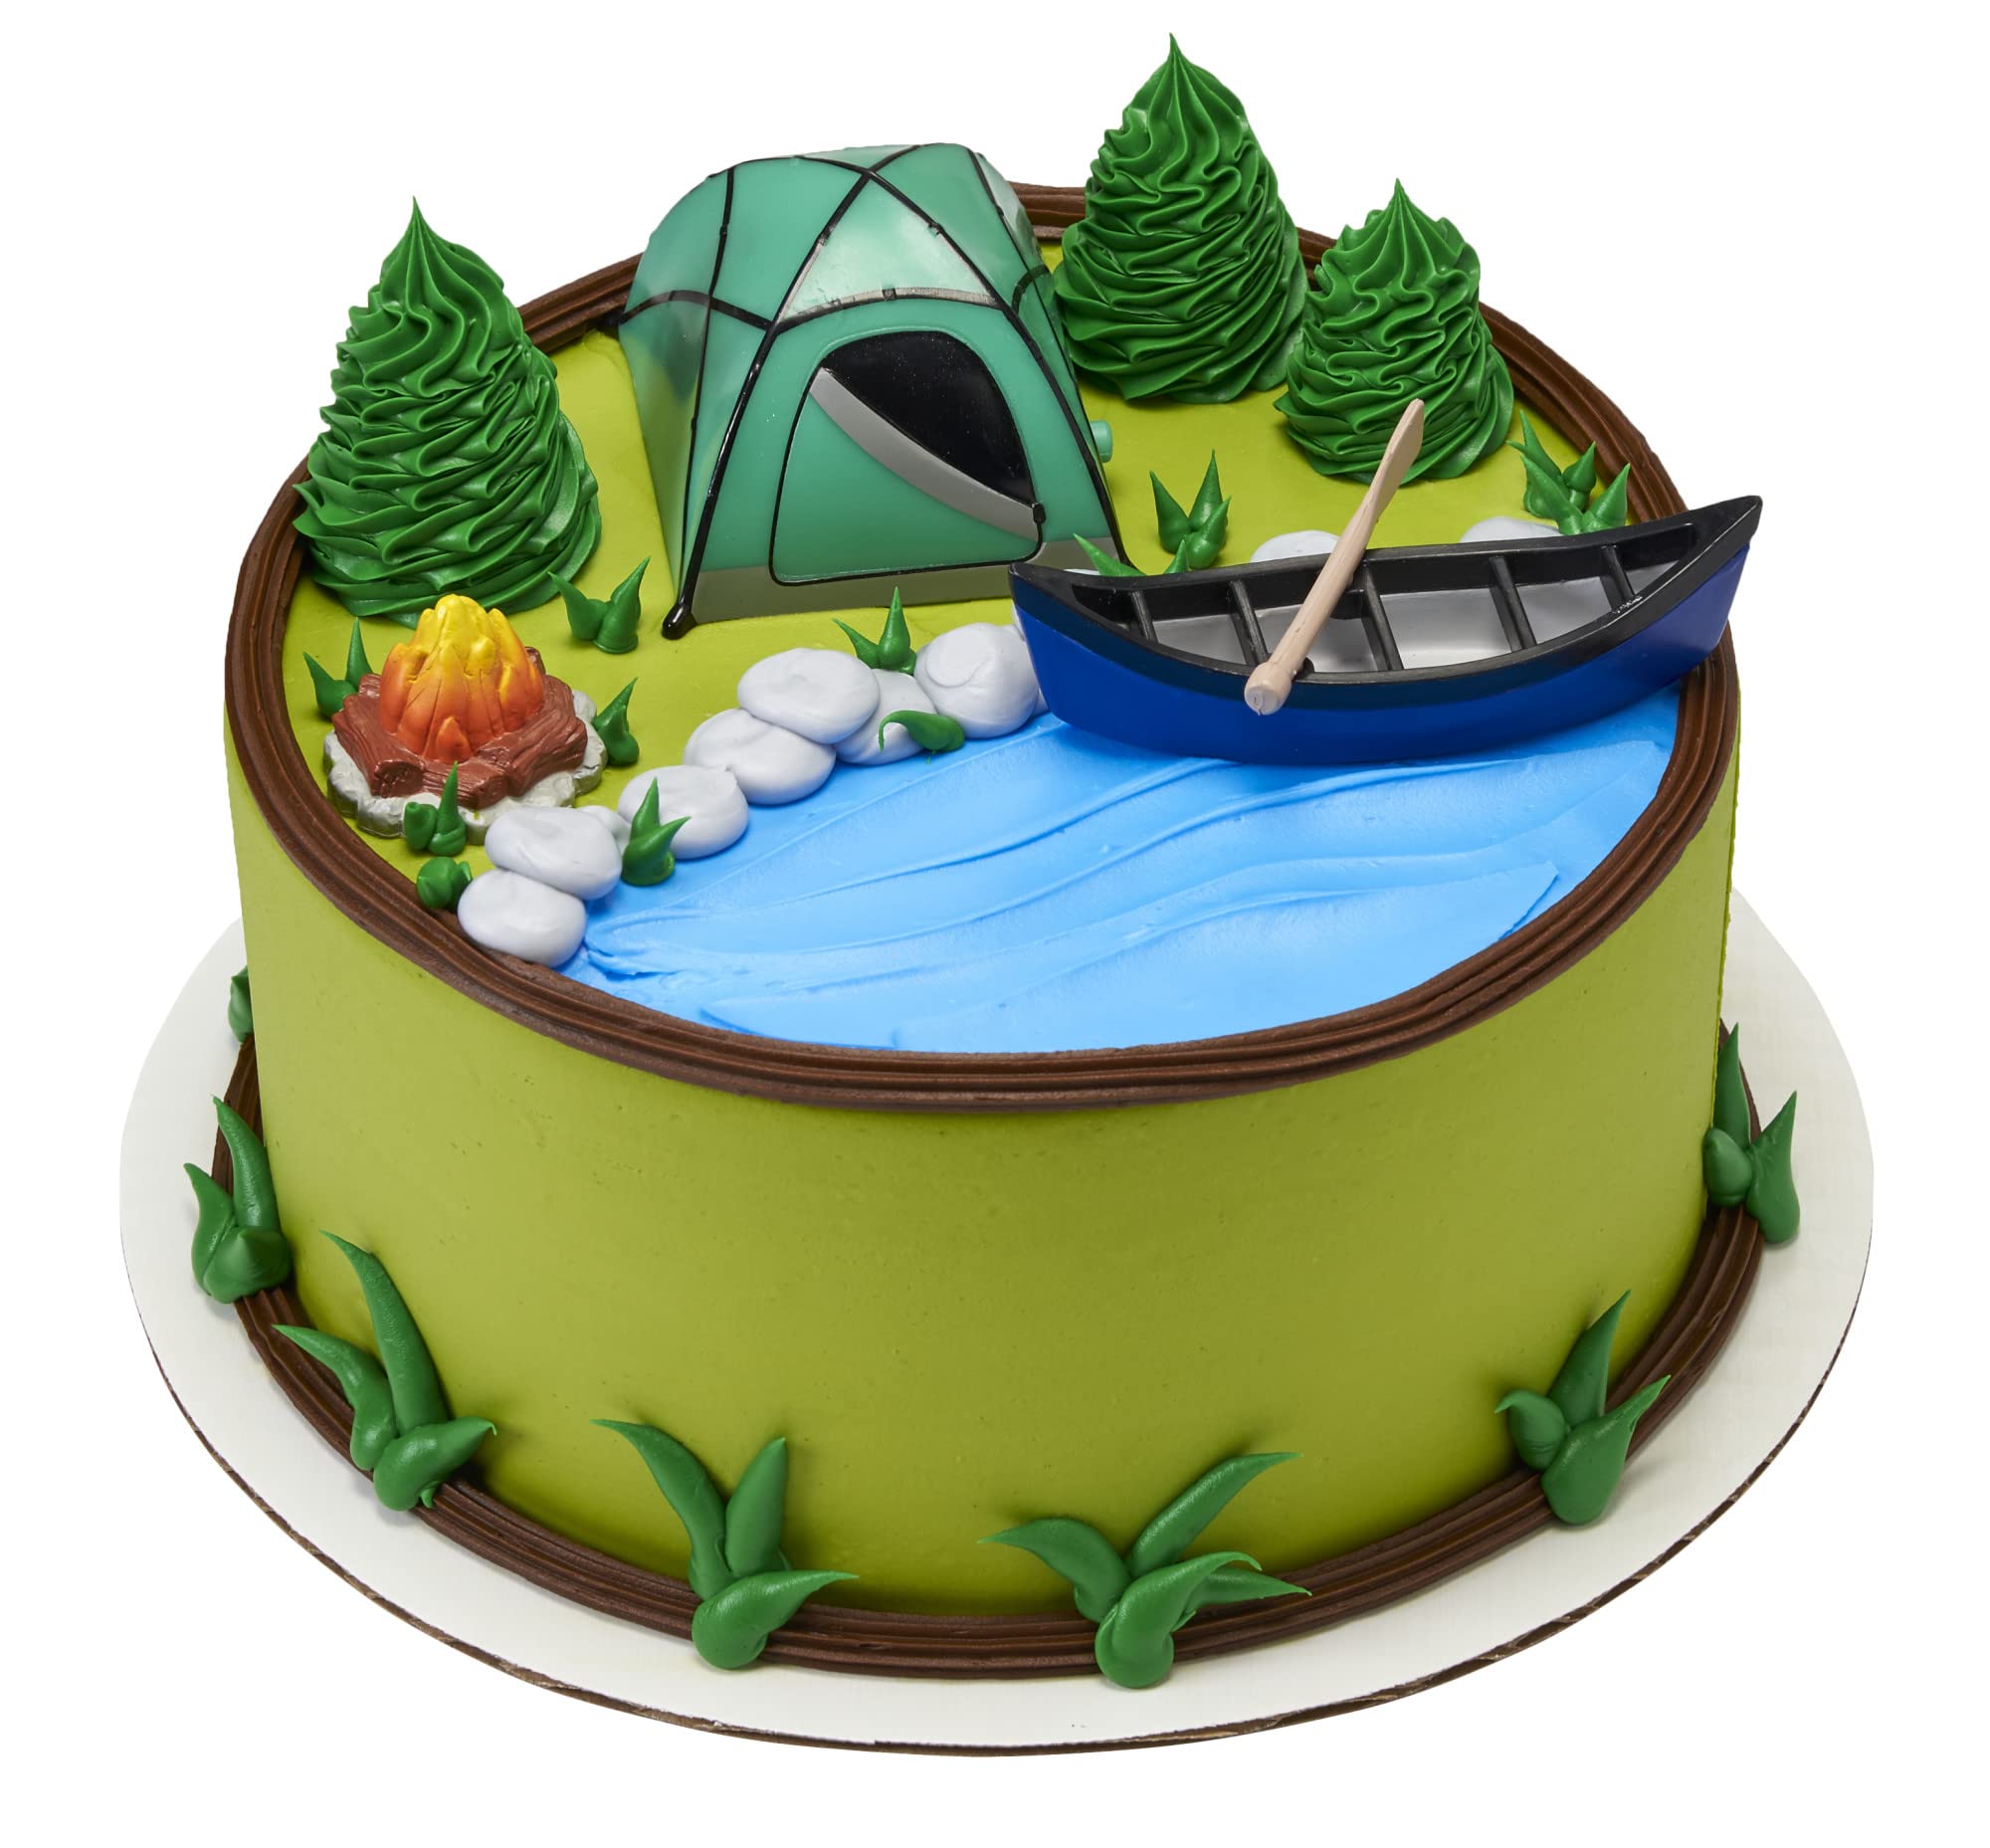 Decopac Fireside Camp DecoSet Cake Decoration Multi, Tent: 3"L x 2.6"W x 1.9"H; Canoe with Oar: 3.5"L x 1.65"W x 1.2"H; Campfire: 1.4"D x 1.2"H